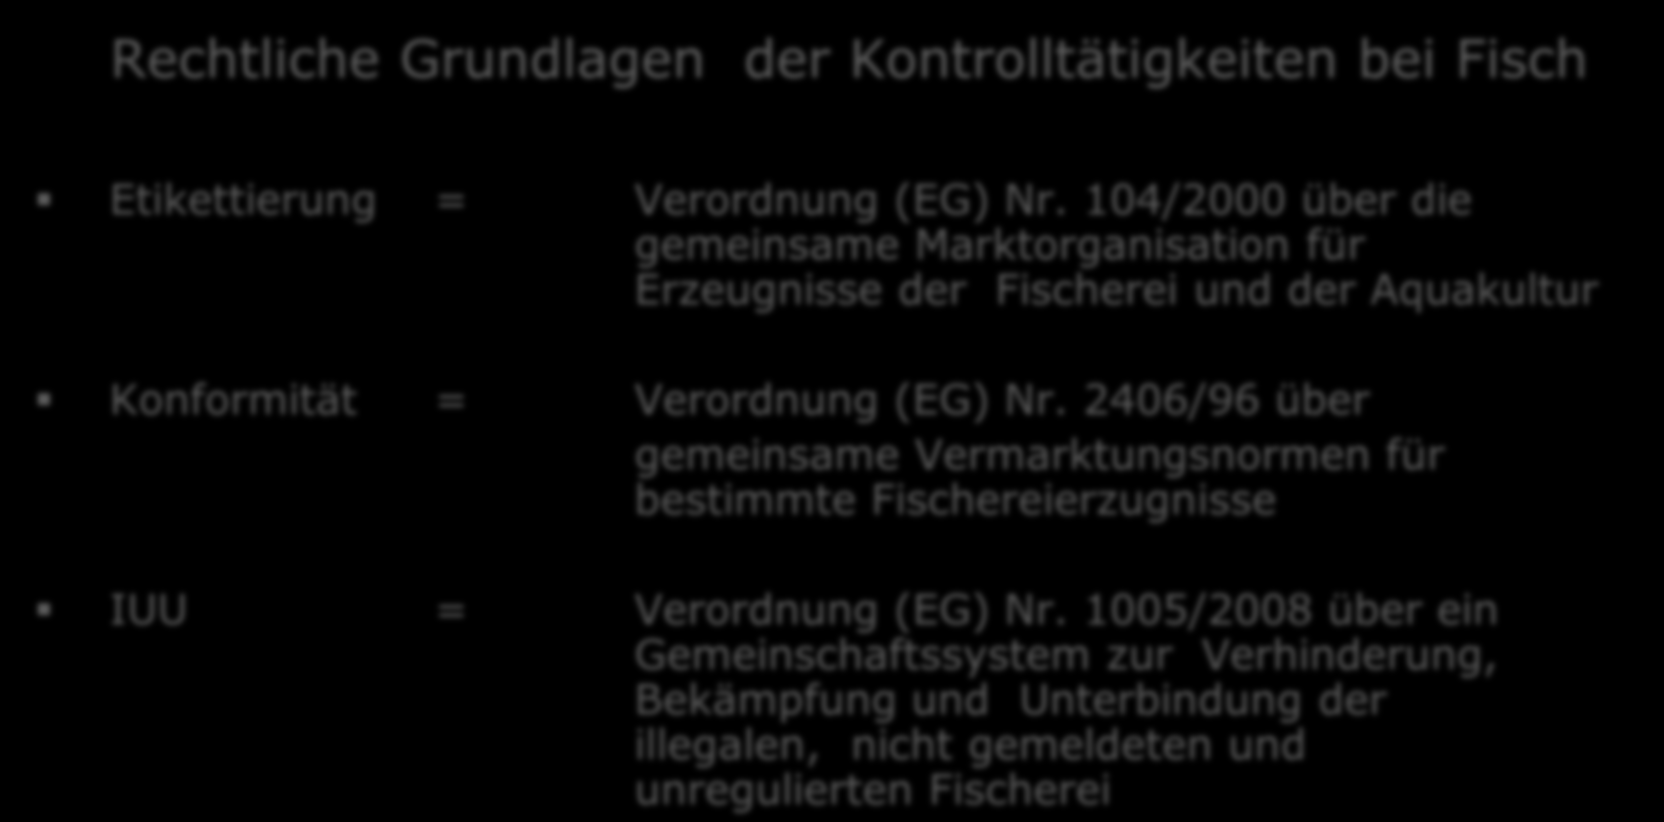 (EG) Nr. 2406/96 über gemeinsame Vermarktungsnormen für bestimmte Fischereierzugnisse IUU = Verordnung (EG) Nr.